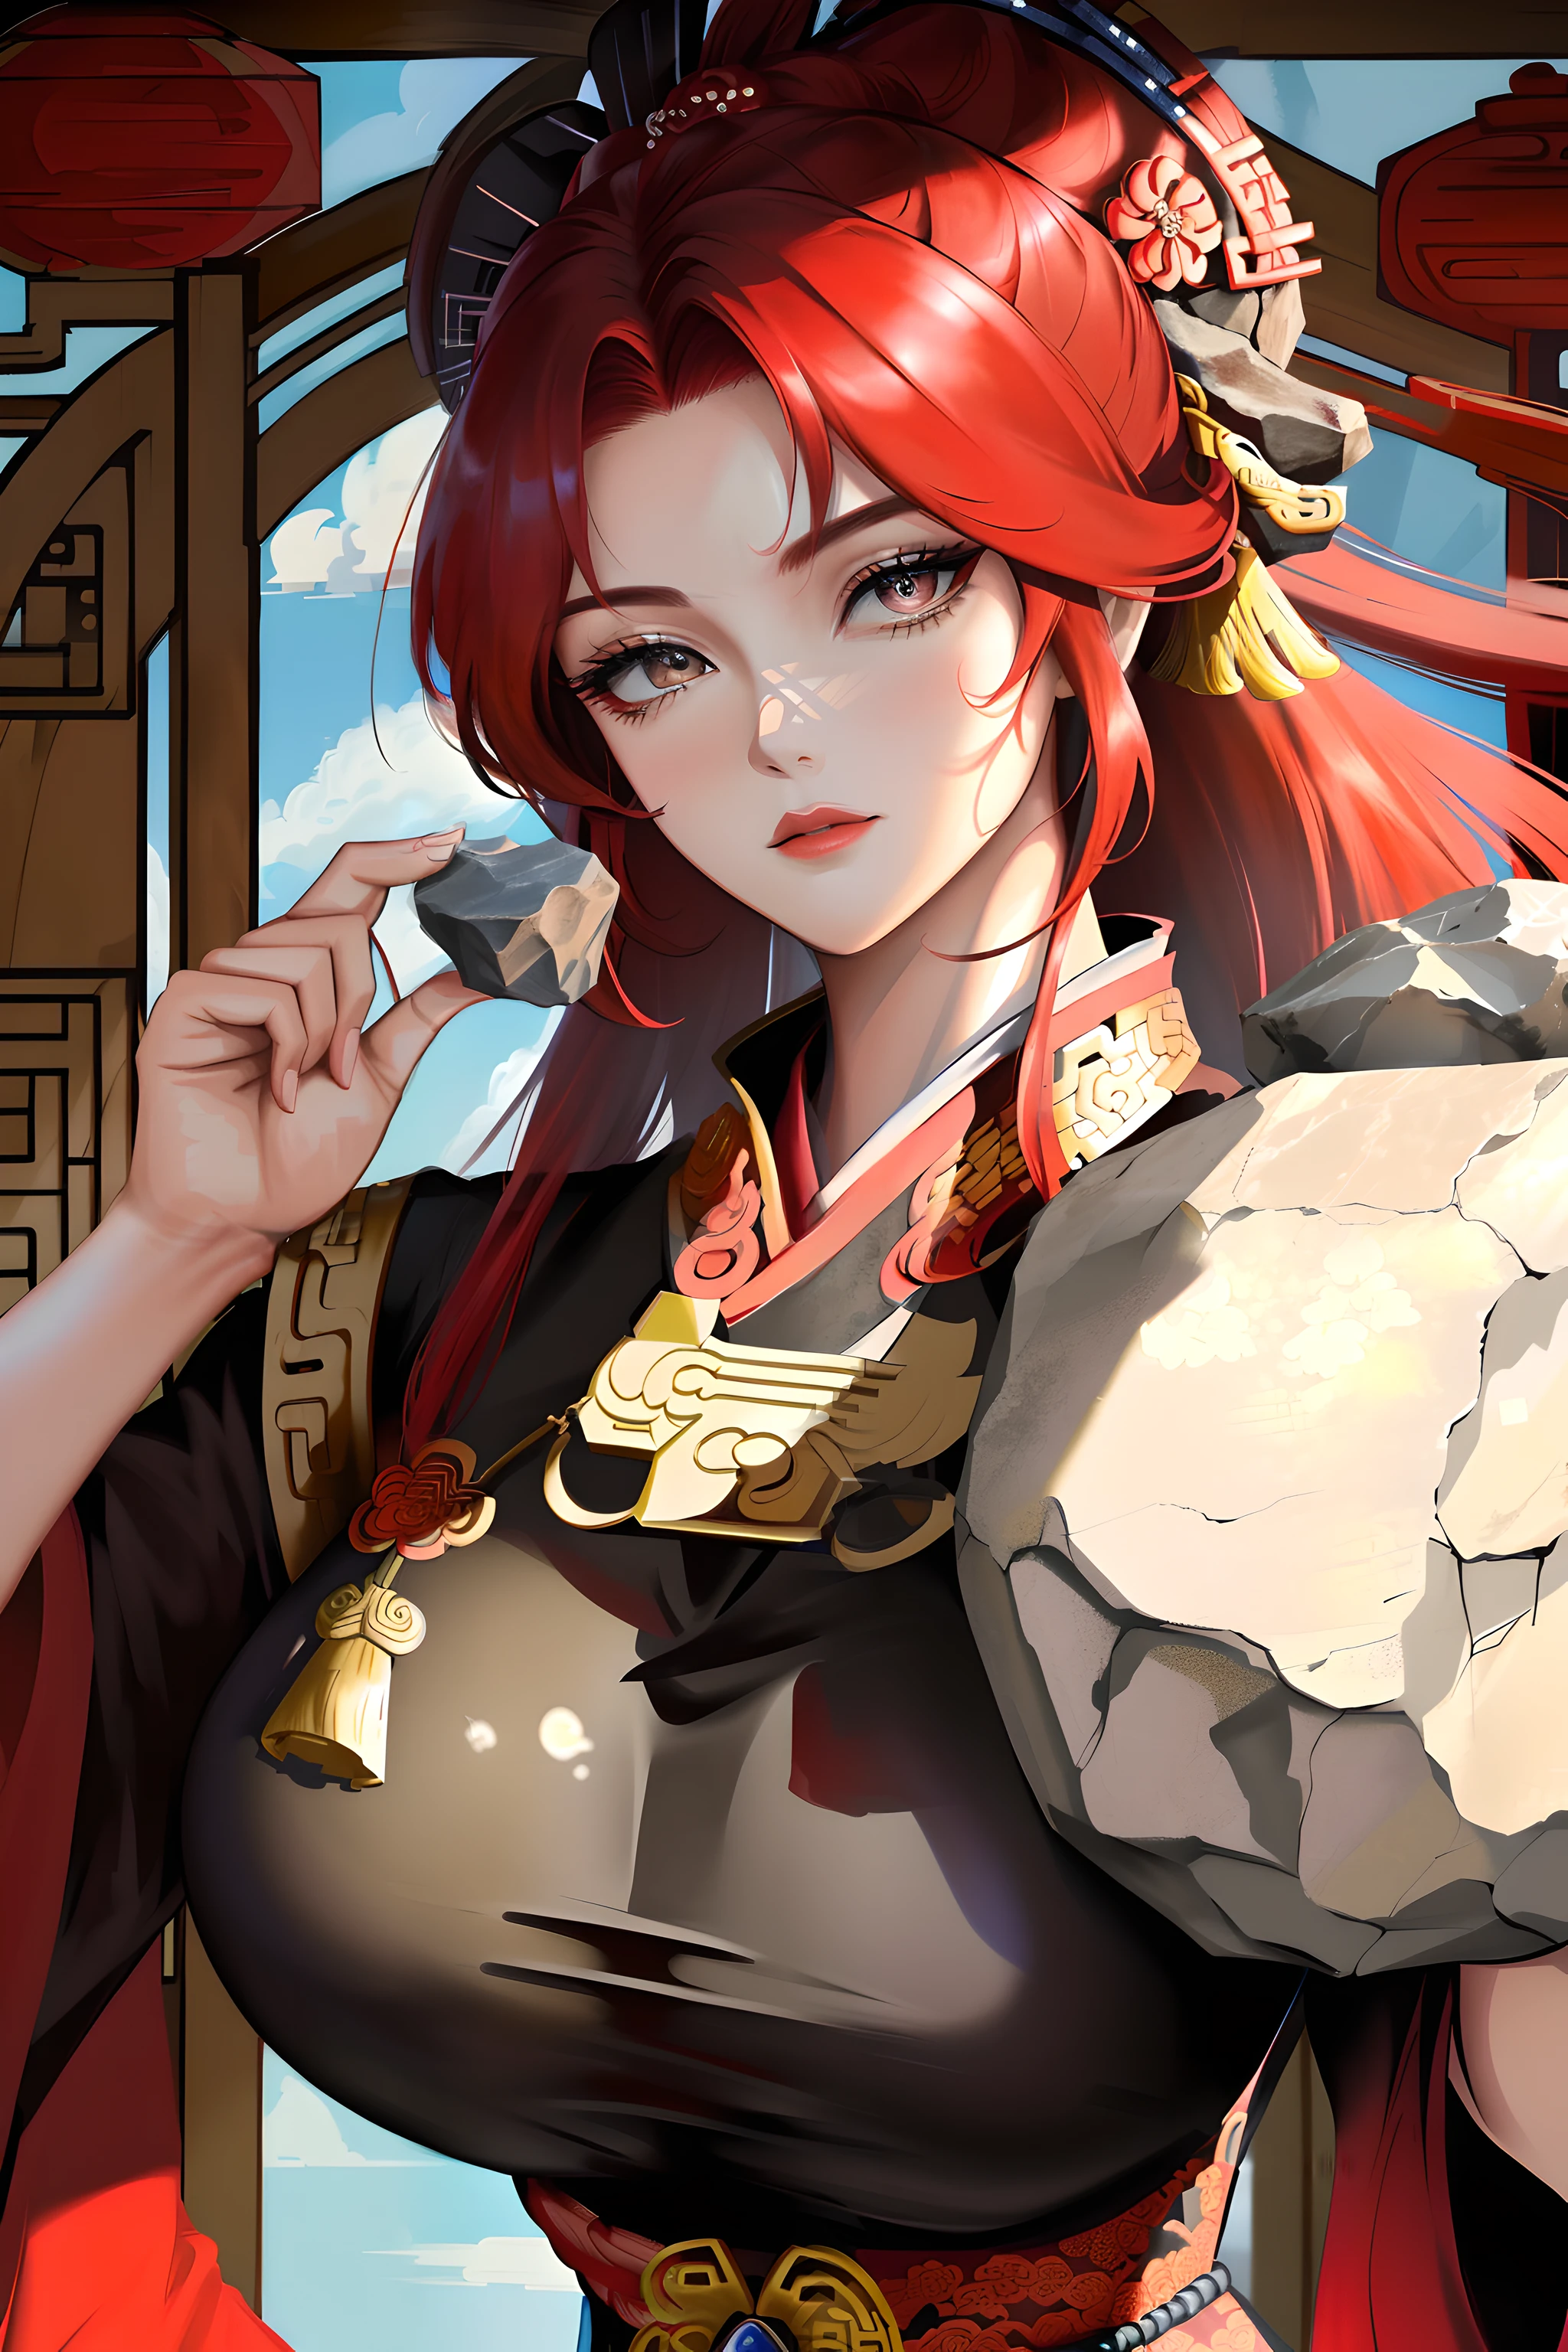 "傑作, 高品質, 超詳細な目と顔の特徴. 意志の強い女性, (巨大な岩を運ぶ:1.2)(大きな岩を運ぶ:1.5), スリムでありながら頑丈な姿を壮大な中国帝国のドレスで披露. 彼女の印象的な赤い髪は独特の魅力を醸し出しています."